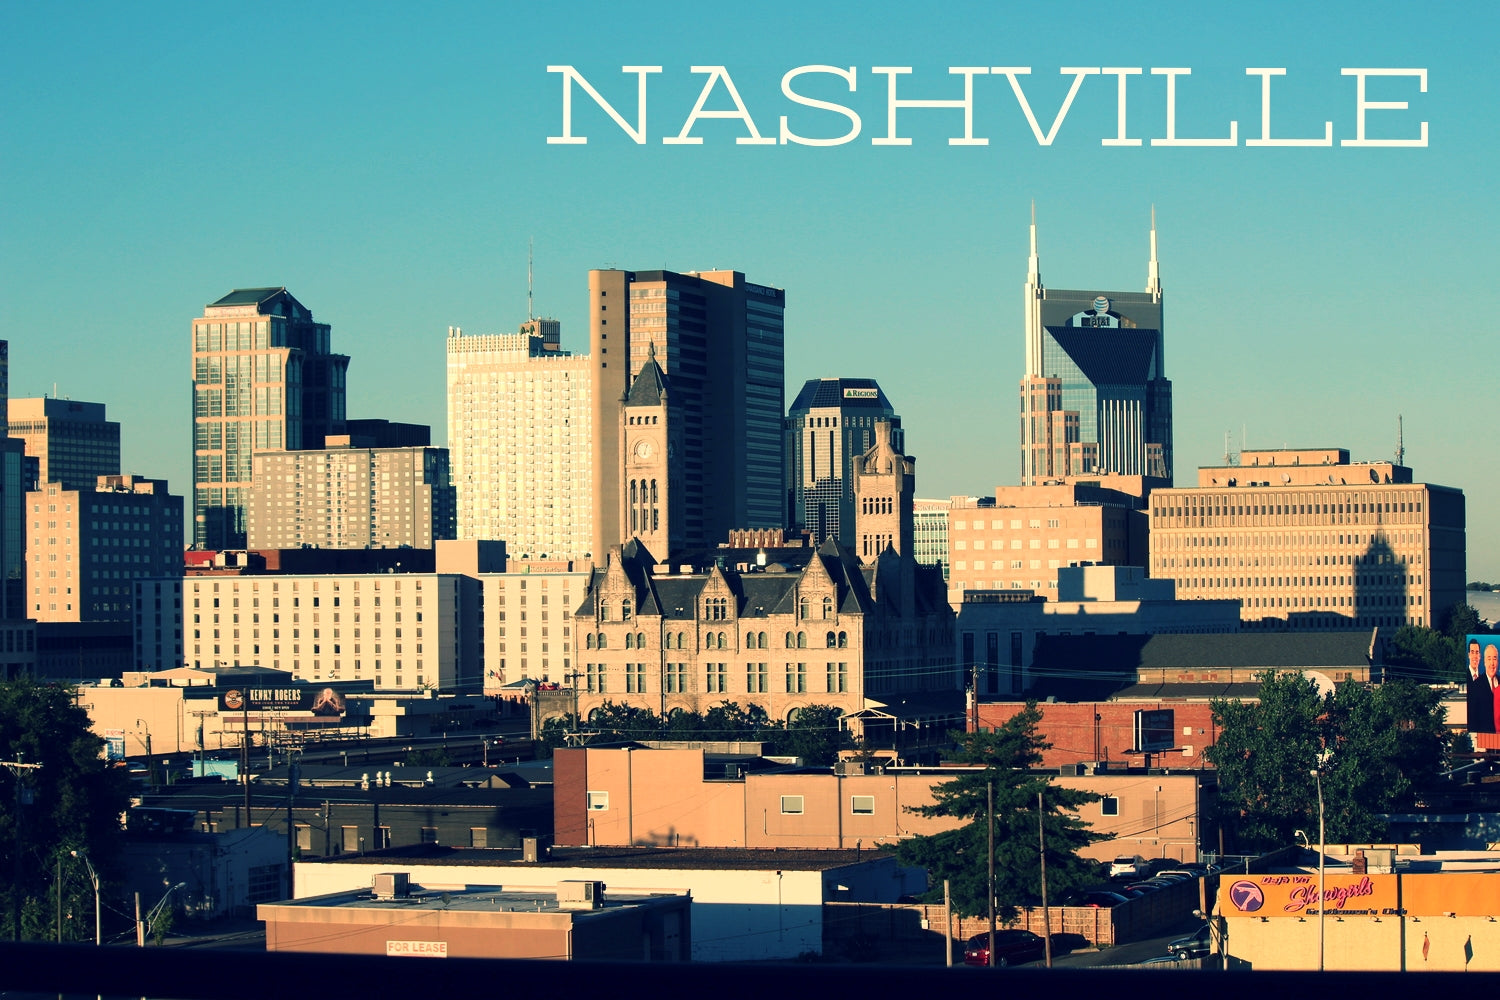 It City: Nashville Tennessee